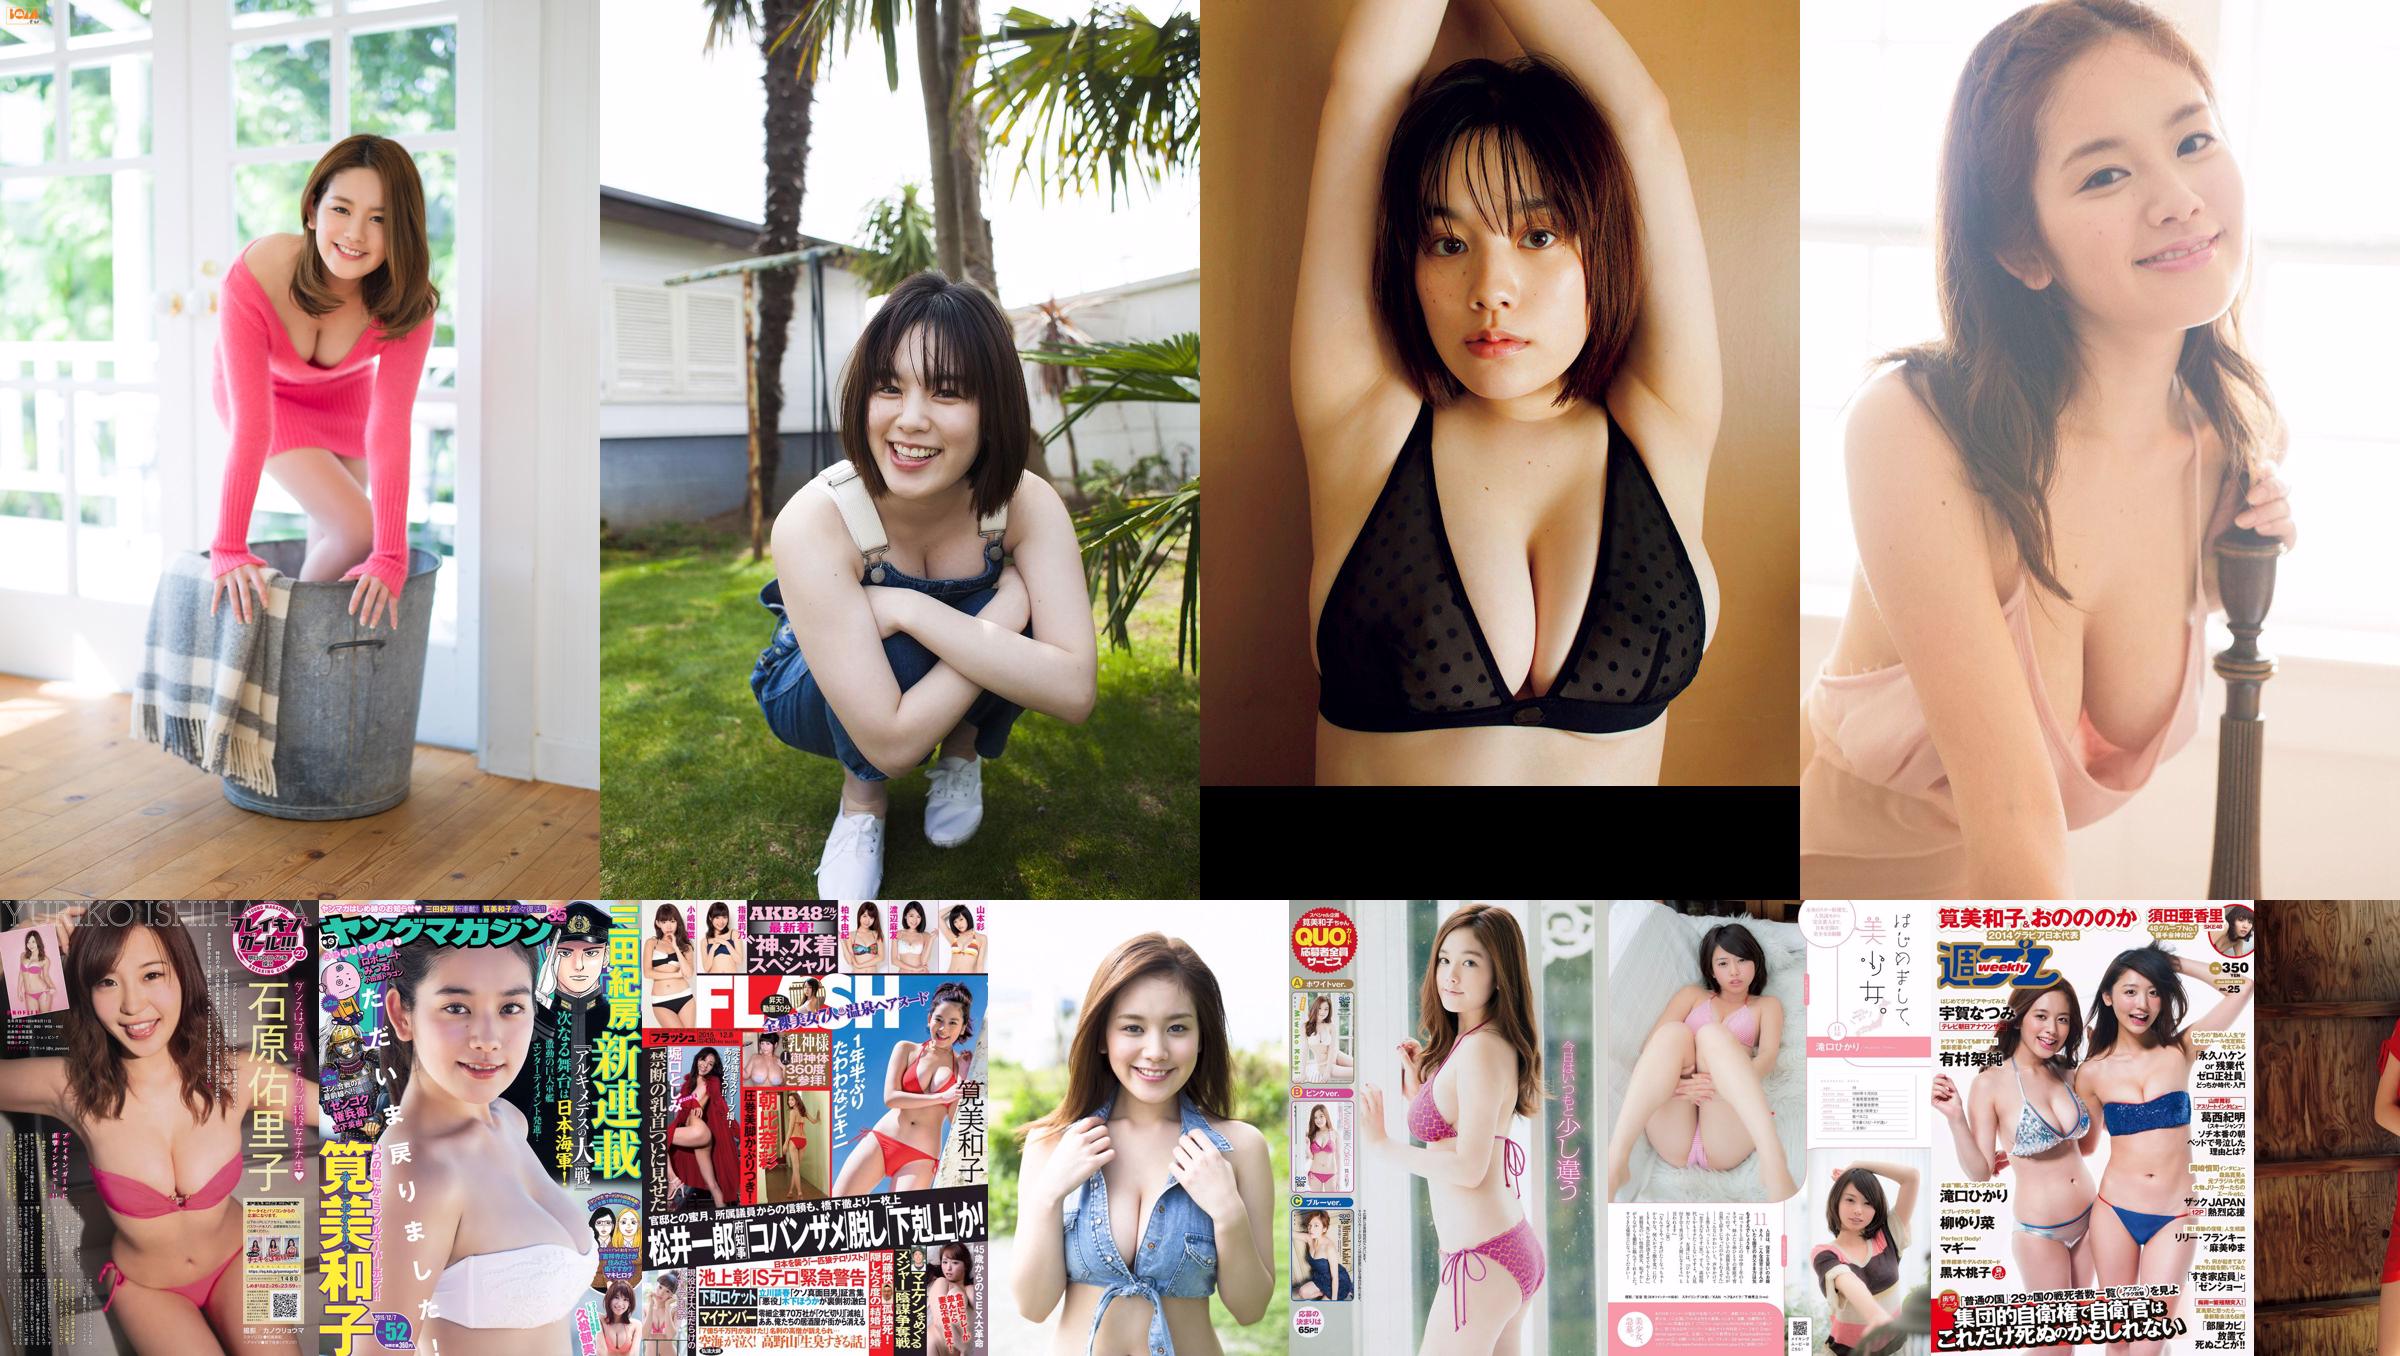 [Young Magazine] Miwako Kakei Tina Tamashiro Natsumi Hirajima 2014 No.09 Photo Miwako No.69e9cf Page 1